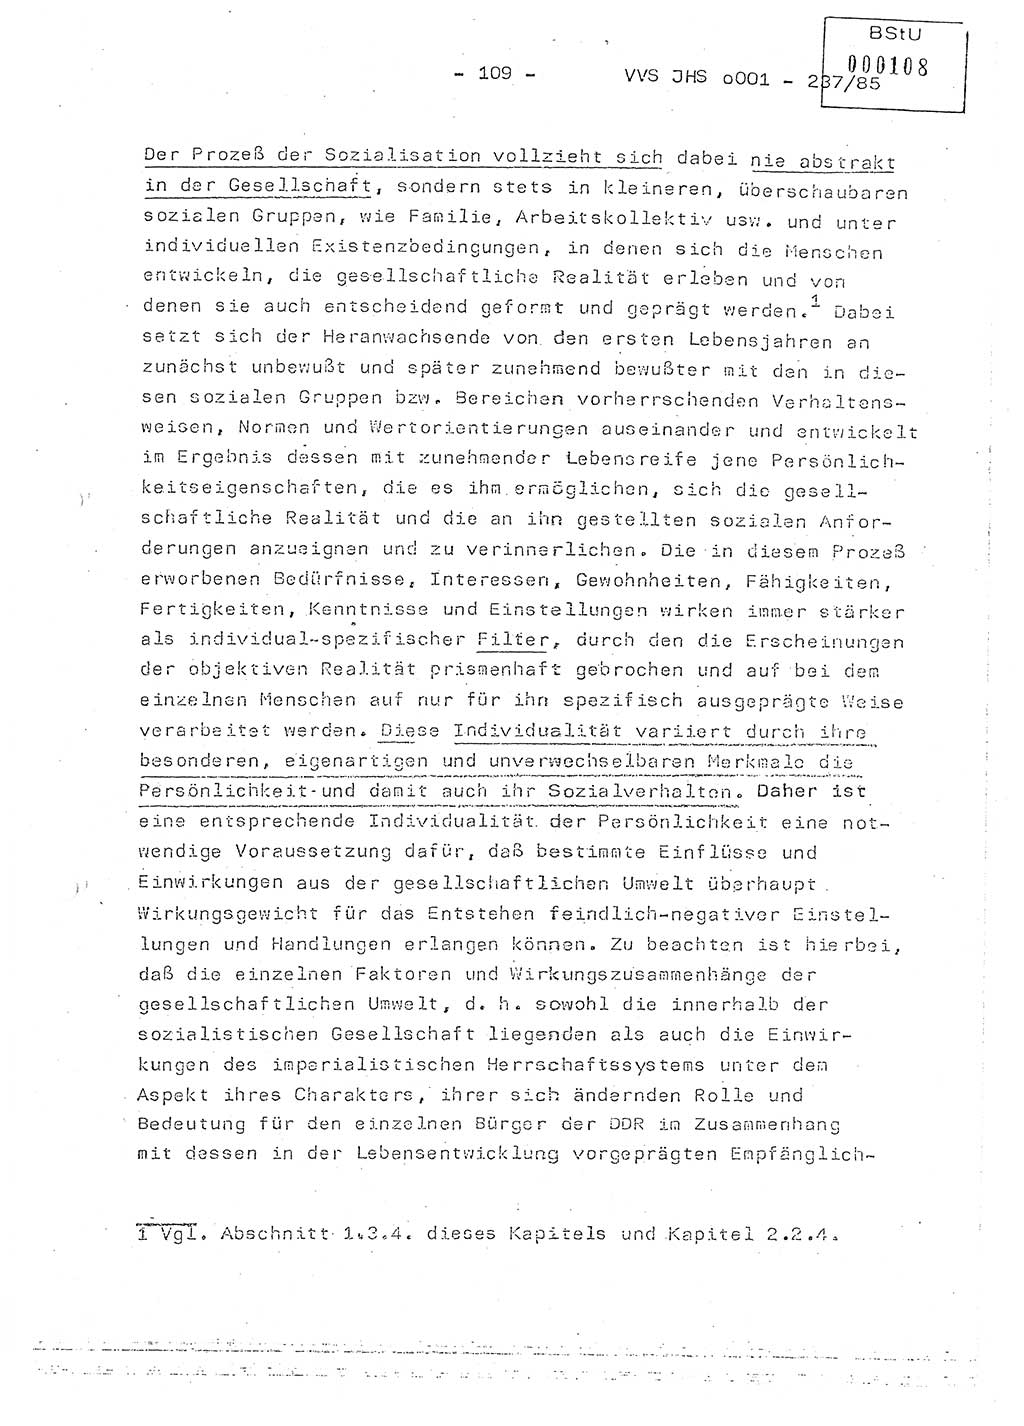 Dissertation Oberstleutnant Peter Jakulski (JHS), Oberstleutnat Christian Rudolph (HA Ⅸ), Major Horst Böttger (ZMD), Major Wolfgang Grüneberg (JHS), Major Albert Meutsch (JHS), Ministerium für Staatssicherheit (MfS) [Deutsche Demokratische Republik (DDR)], Juristische Hochschule (JHS), Vertrauliche Verschlußsache (VVS) o001-237/85, Potsdam 1985, Seite 109 (Diss. MfS DDR JHS VVS o001-237/85 1985, S. 109)